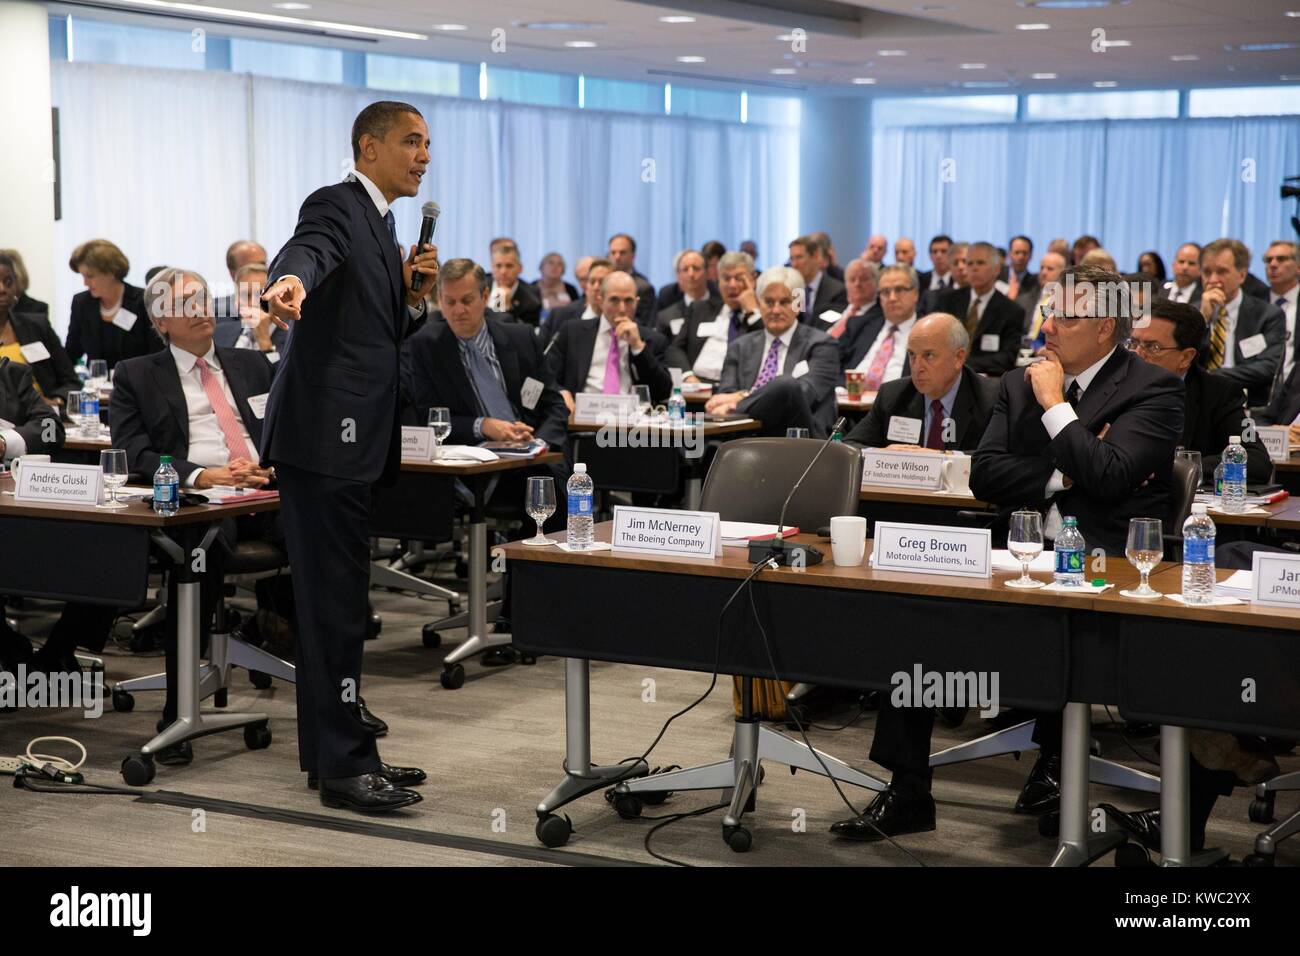 Präsident Barack Obama nimmt Fragen an den vierteljährlichen Treffen des Business Roundtable. Die Gruppe ist meist weiß Männer, mit nur ein paar Frauen oder Afrikanische Amerikaner Teilnehmer. Washington, D.C., Dez. 5, 2012. (BSLOC_2015_13_155) Stockfoto